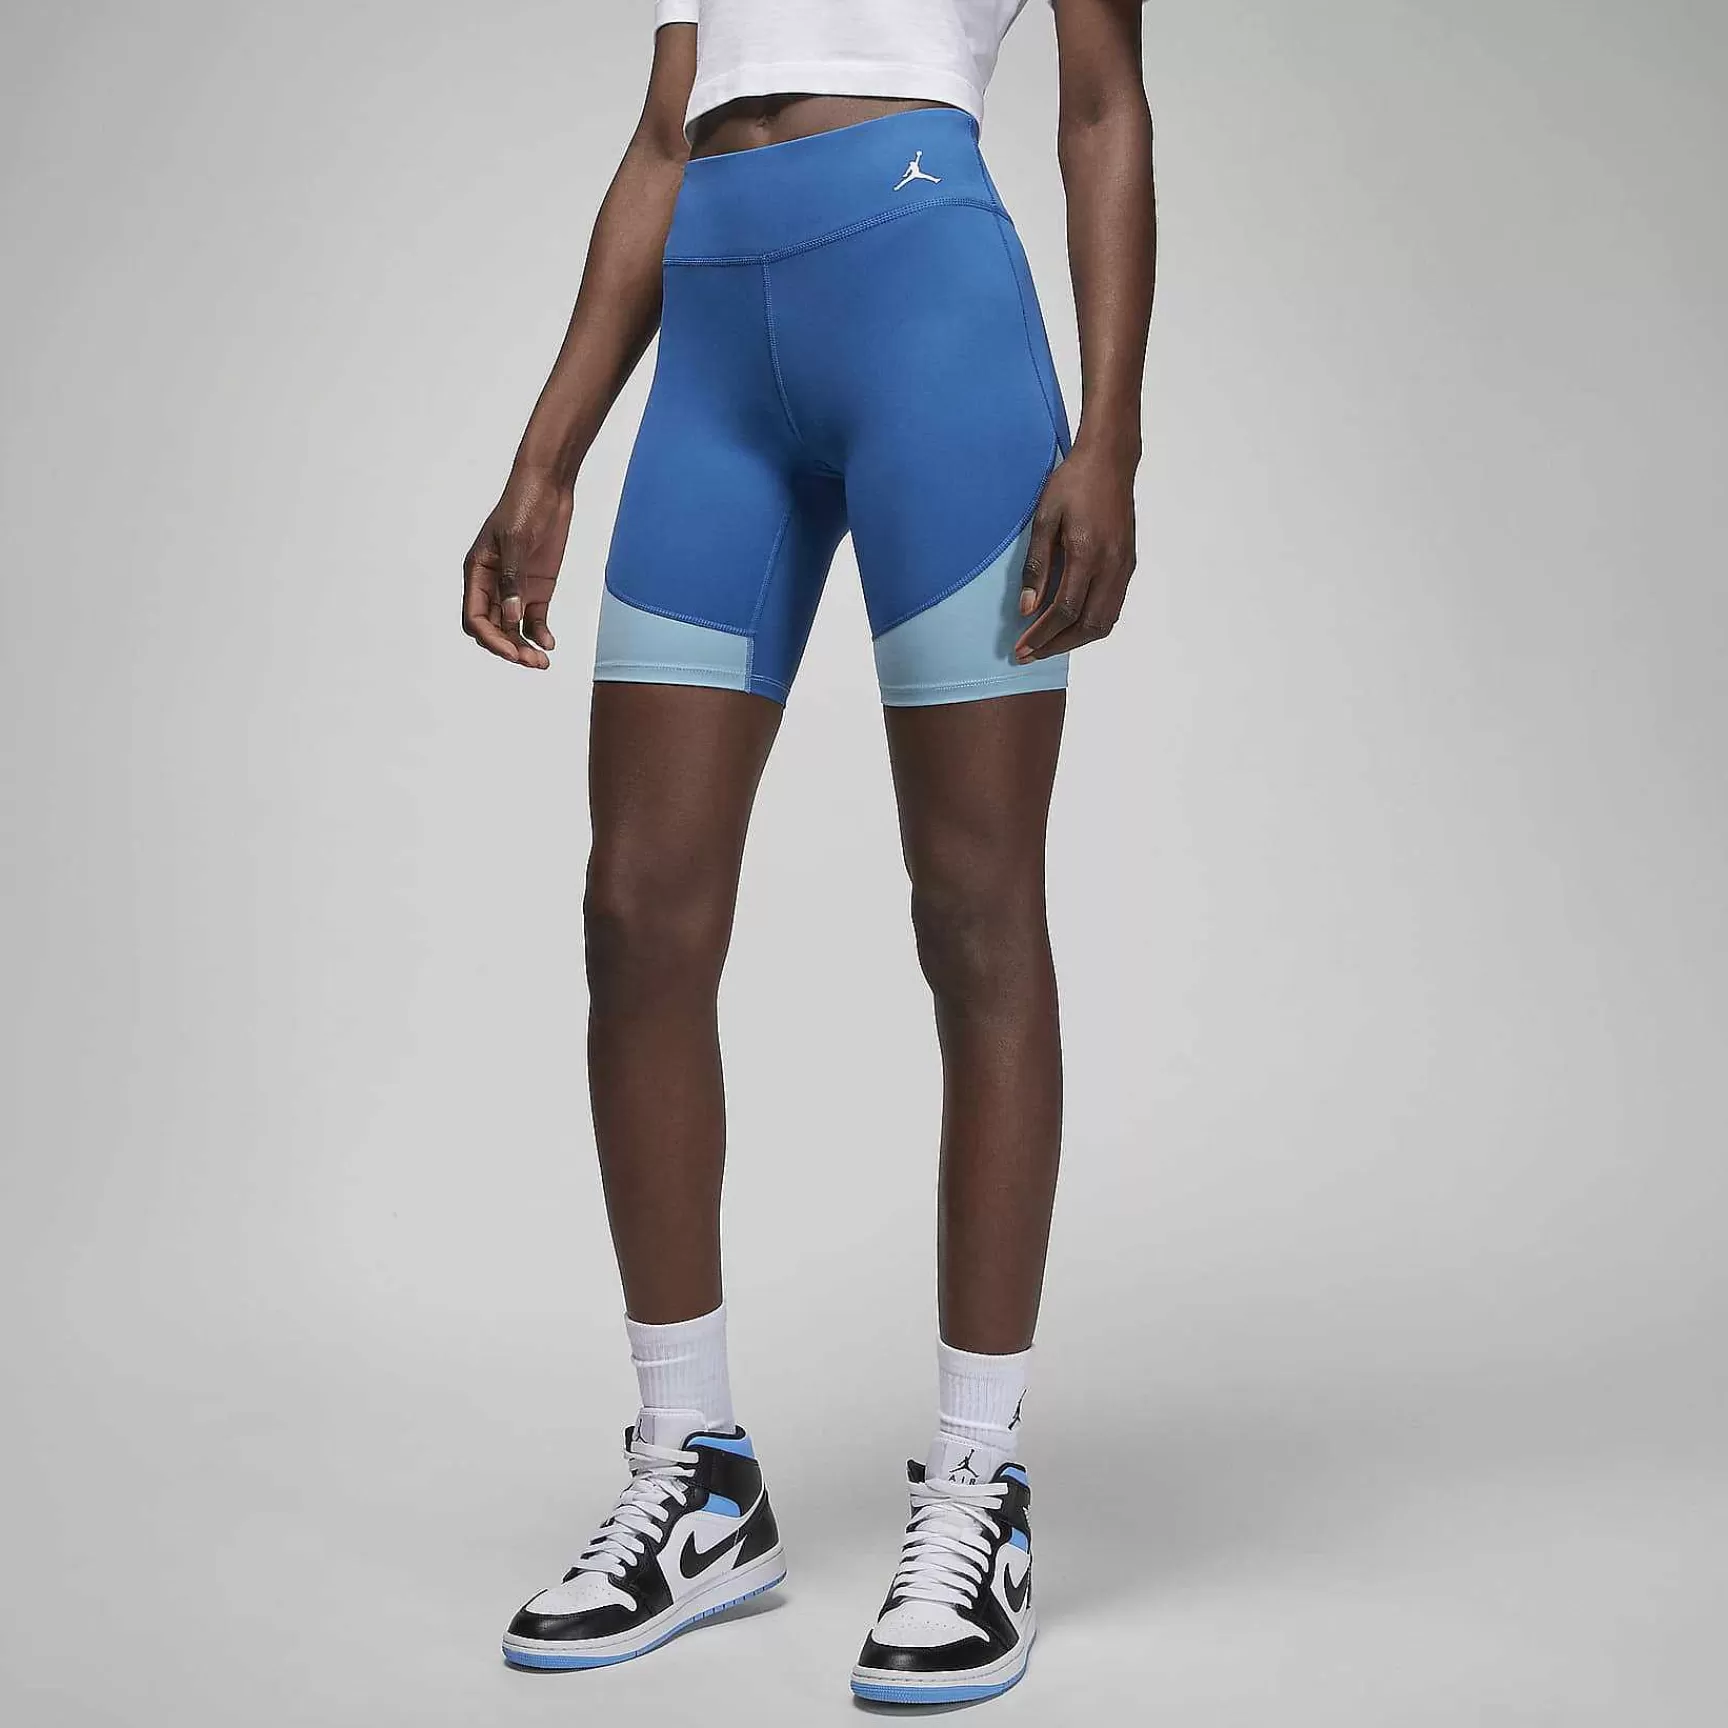 Kobiety Nike Jordania | Jordan (Jej) Itage